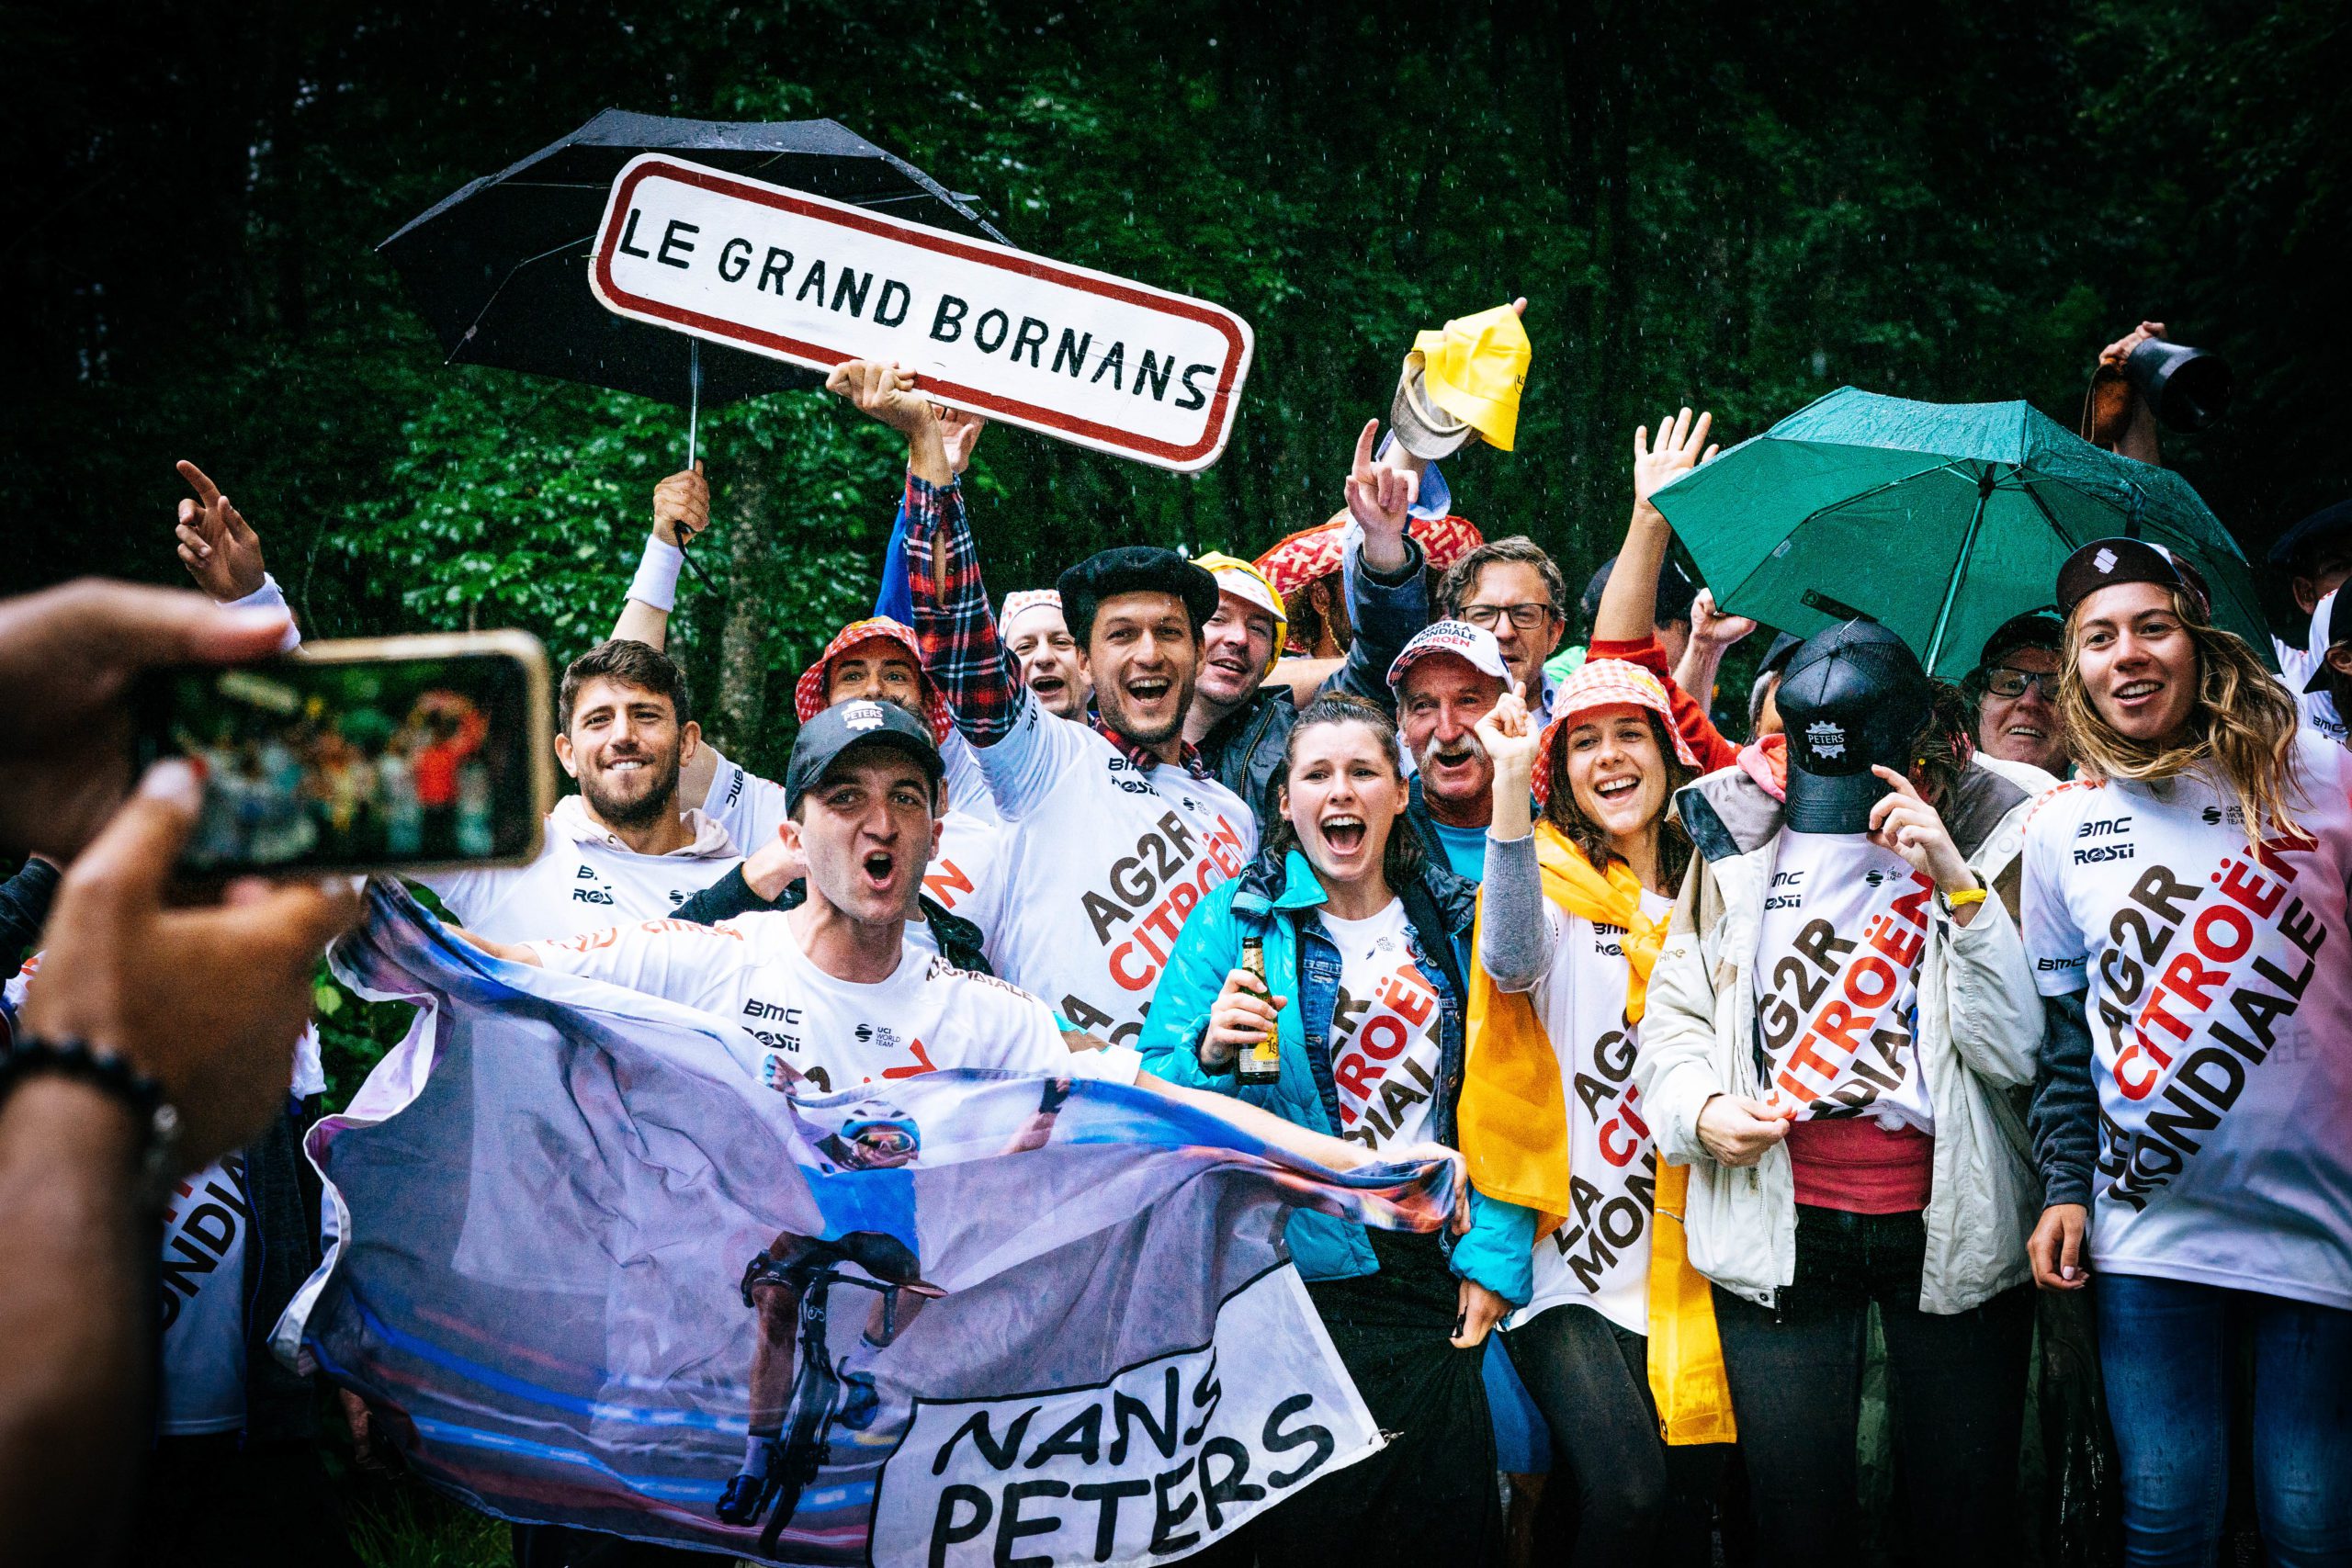 Rassemblement supporters – Tour de France